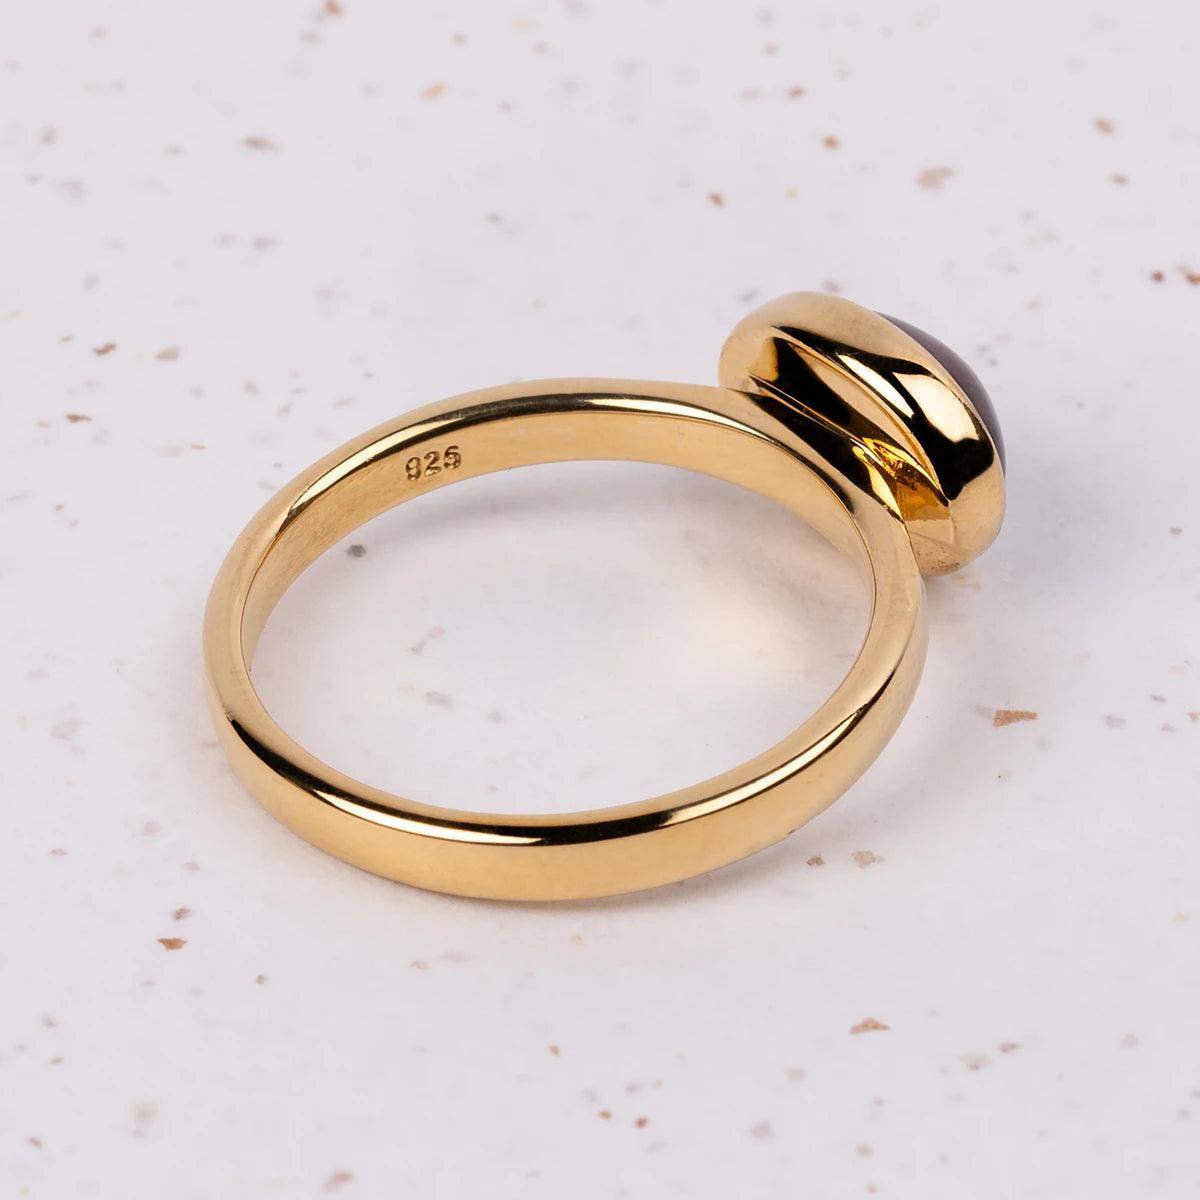 Elizabeth Bennet Gold Plated Ring